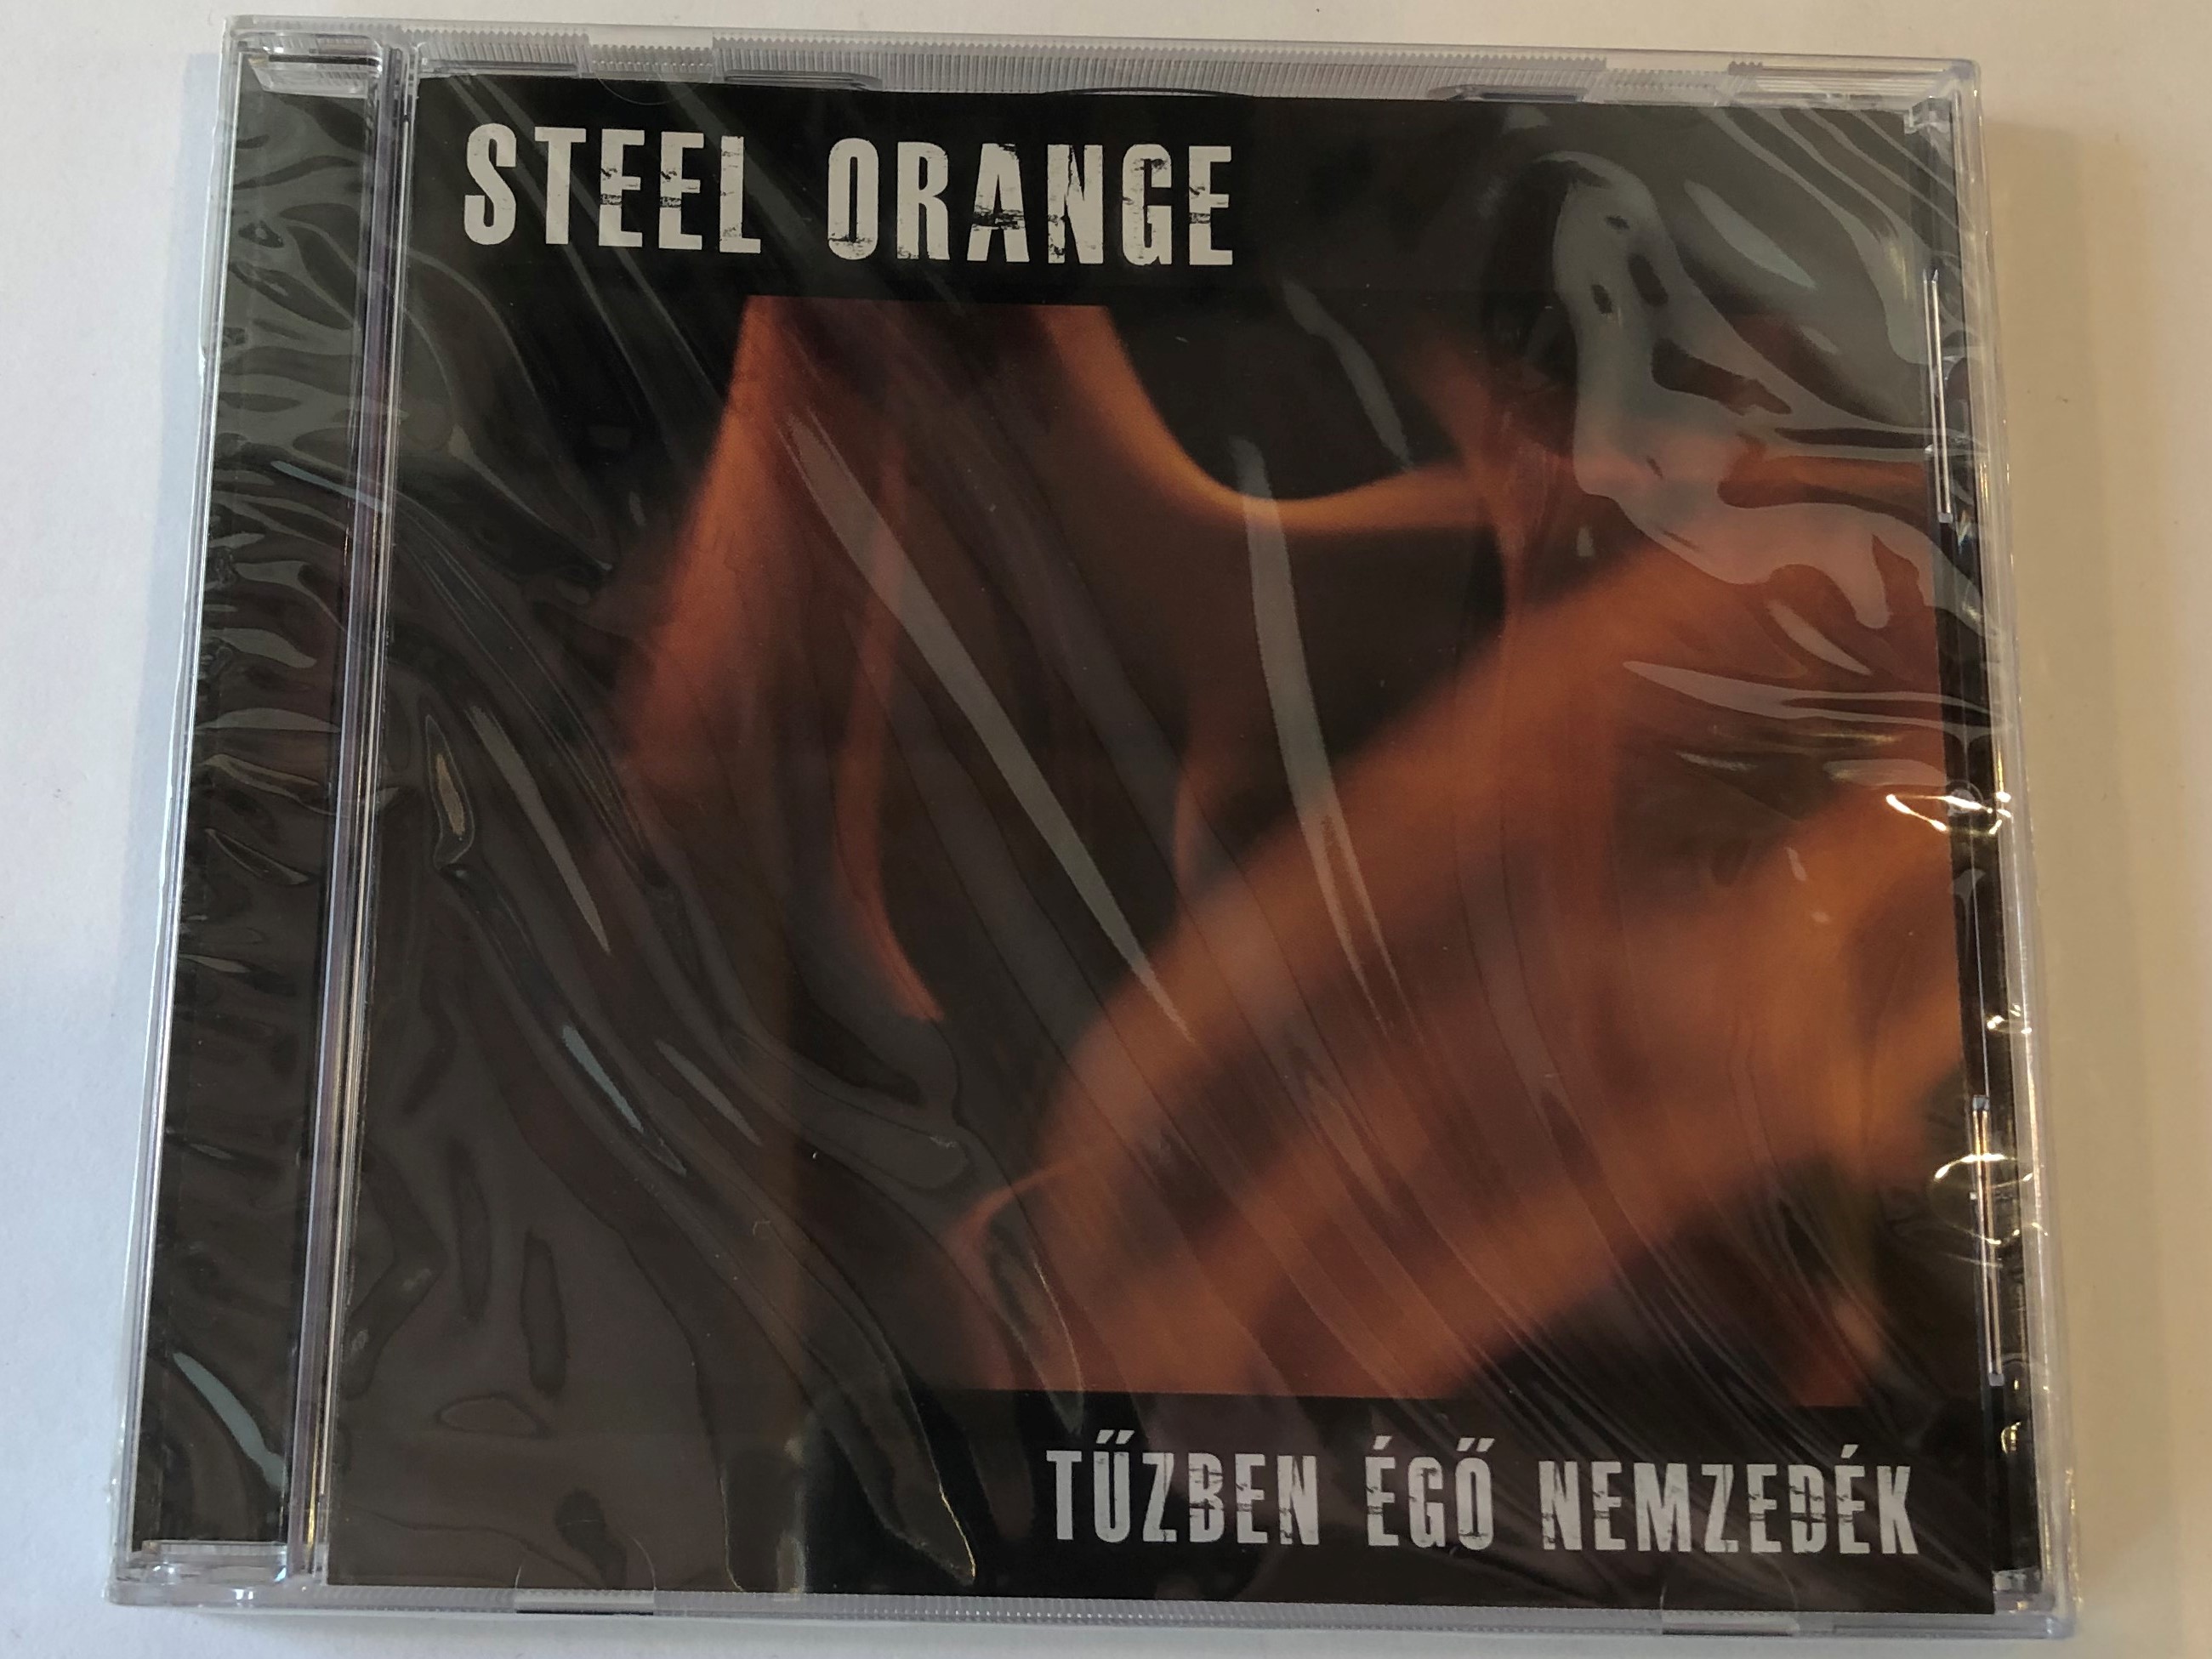 steel-orange-tuzben-ego-nemzedek-grundrecords-audio-cd-2012-gr012-1-.jpg